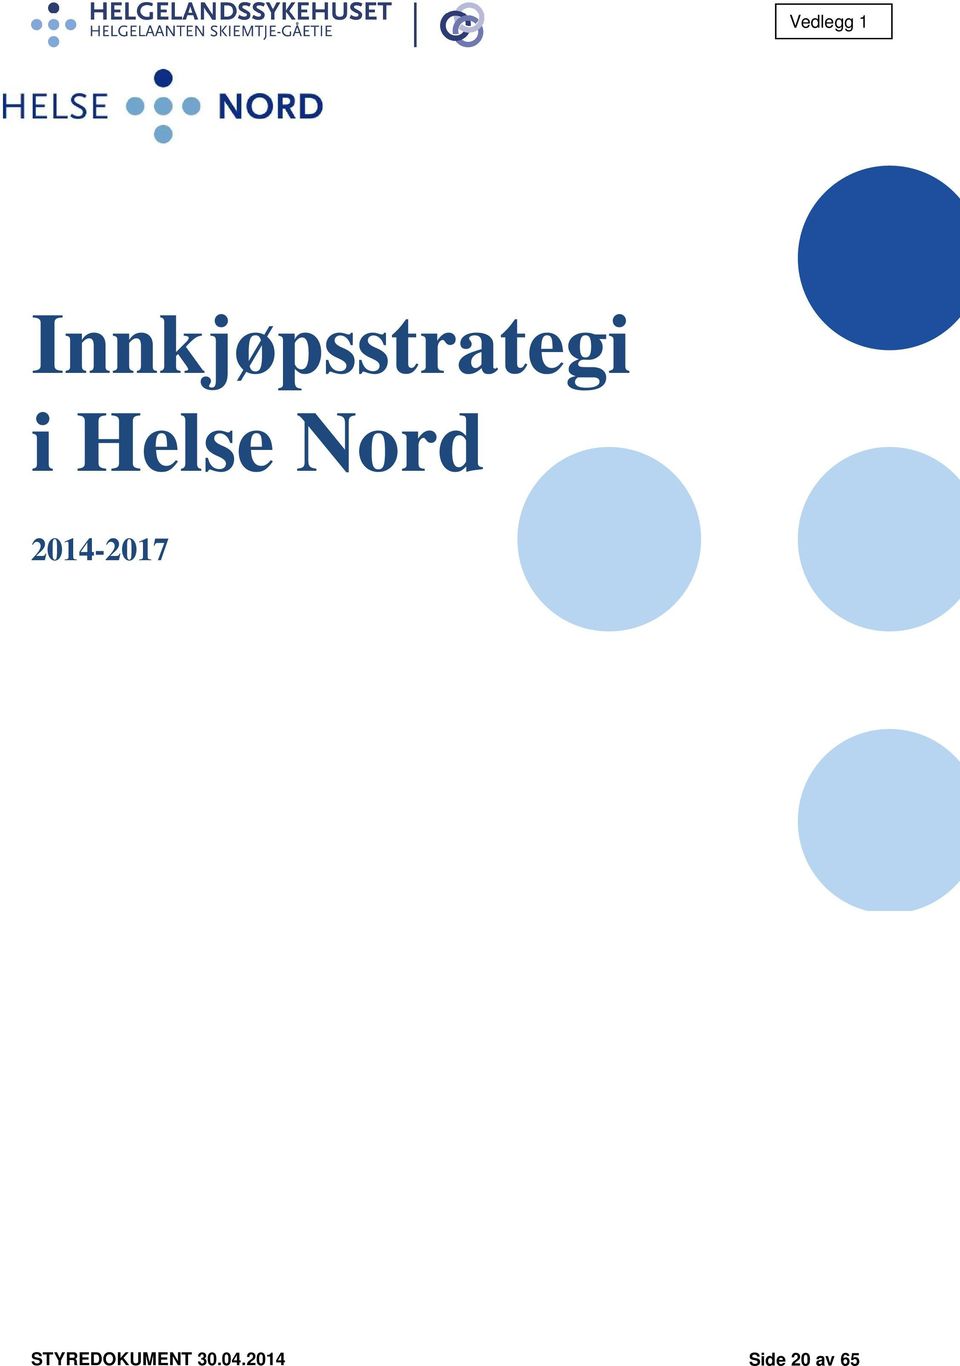 Helse Nord 2014-2017